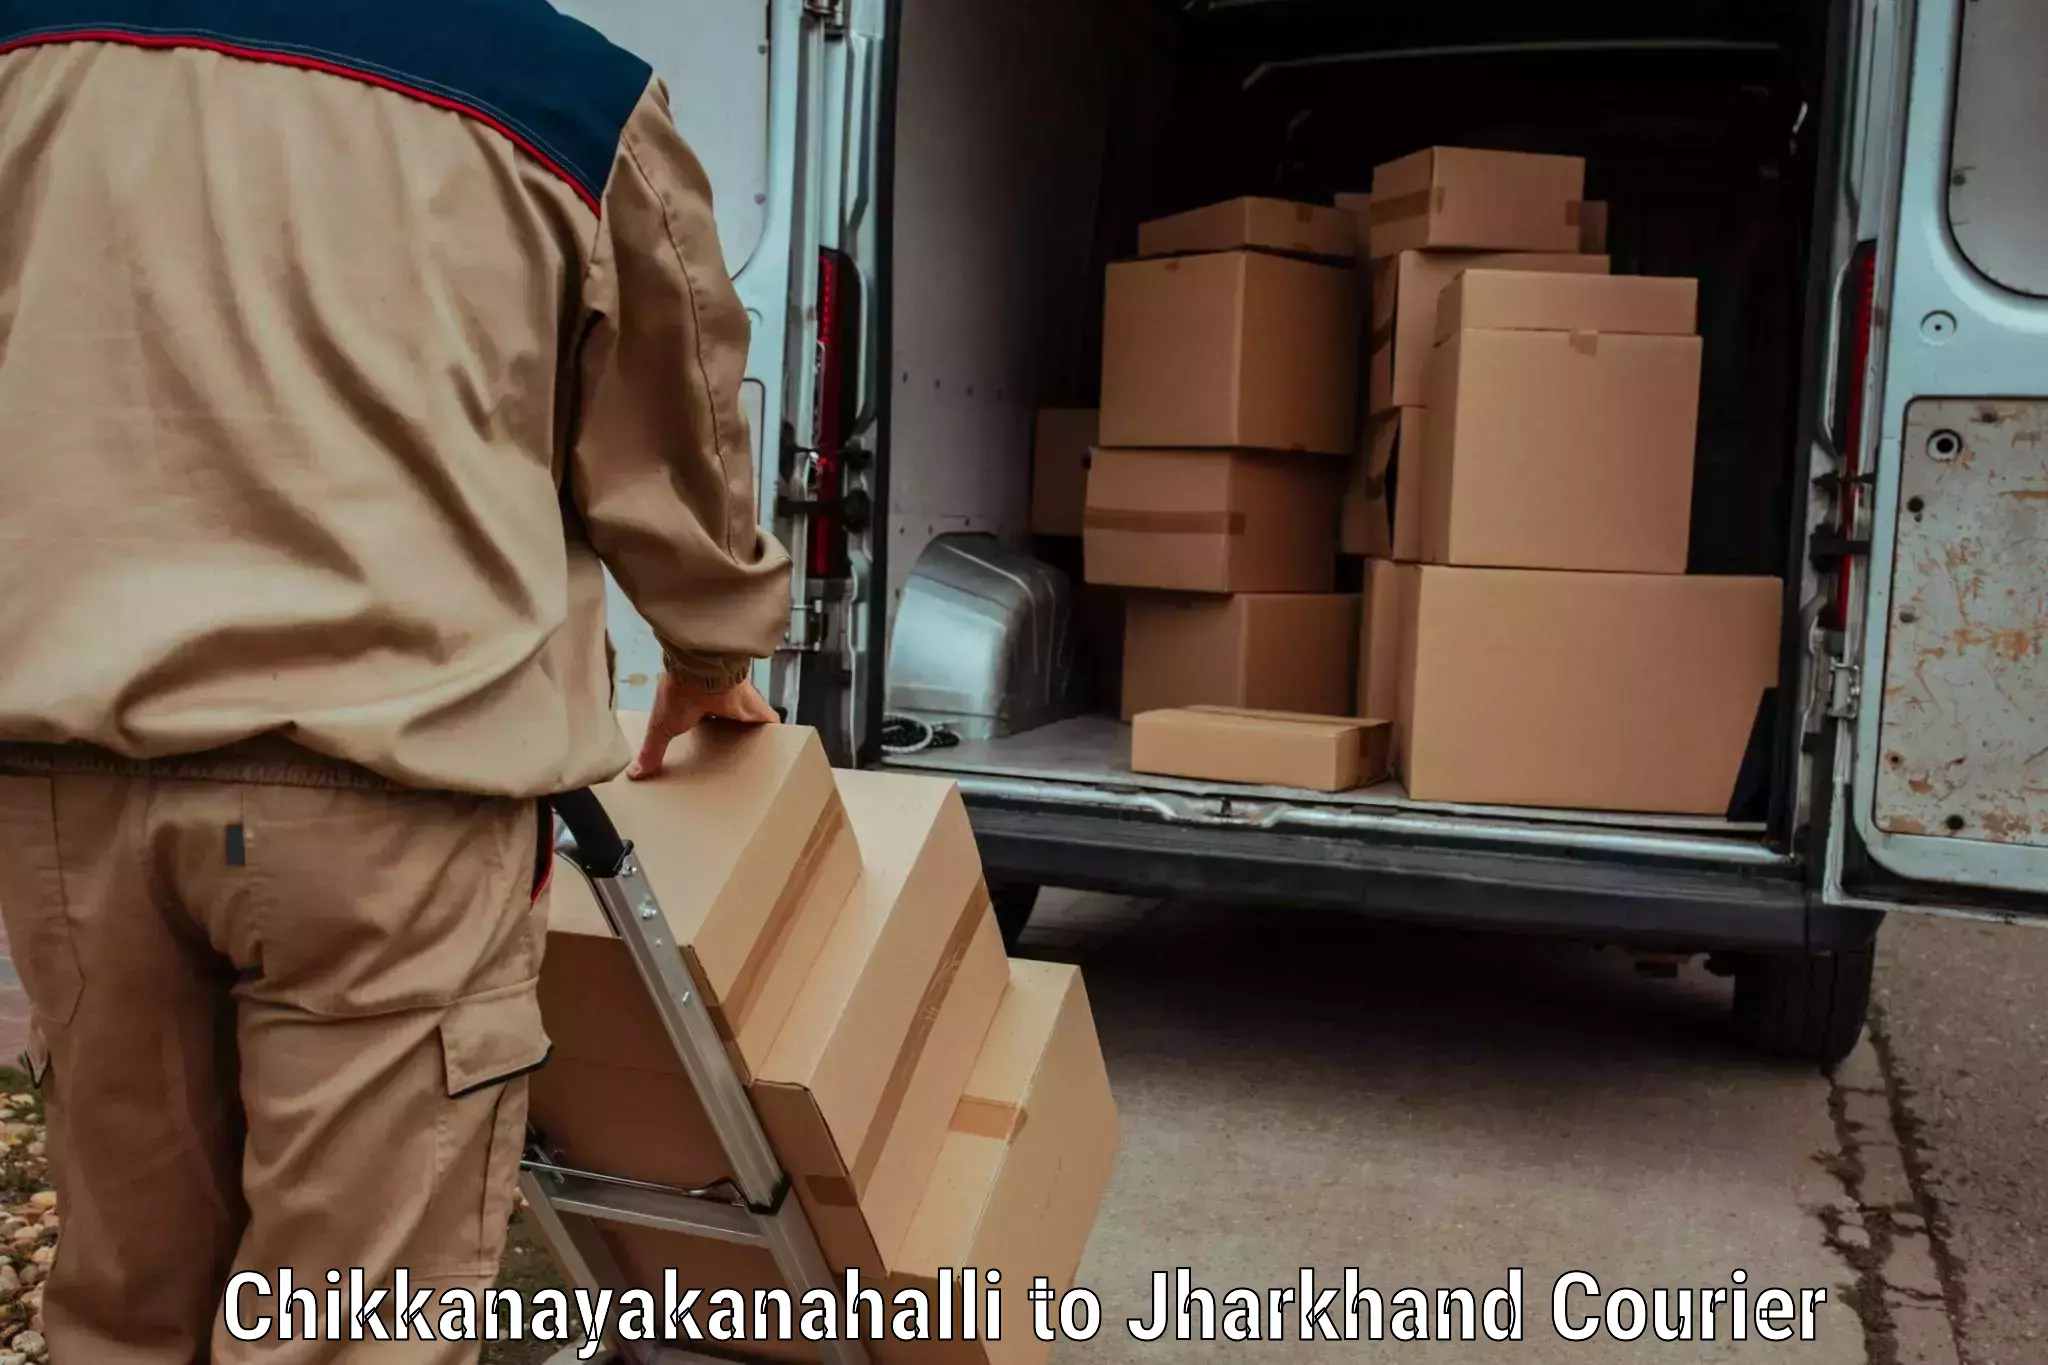 On-call courier service Chikkanayakanahalli to Ranka Garhwa